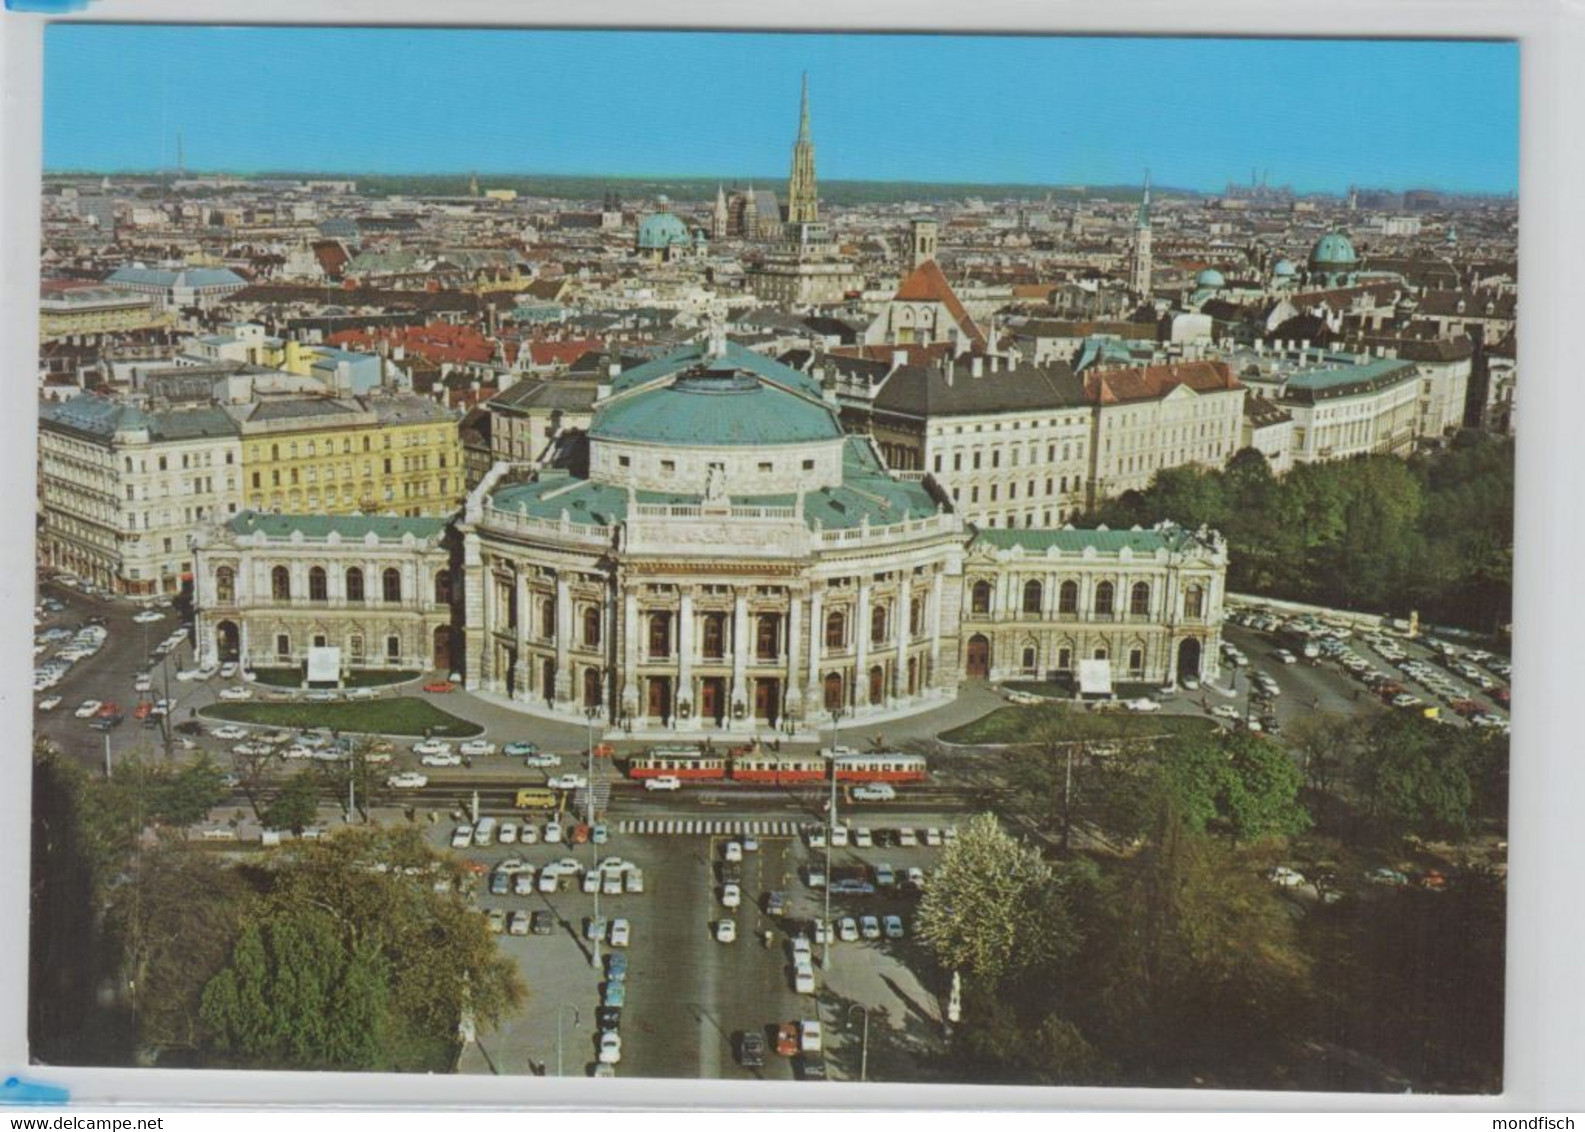 Wien - Burgtheater - Straßenbahn - Luftbild - Ringstrasse